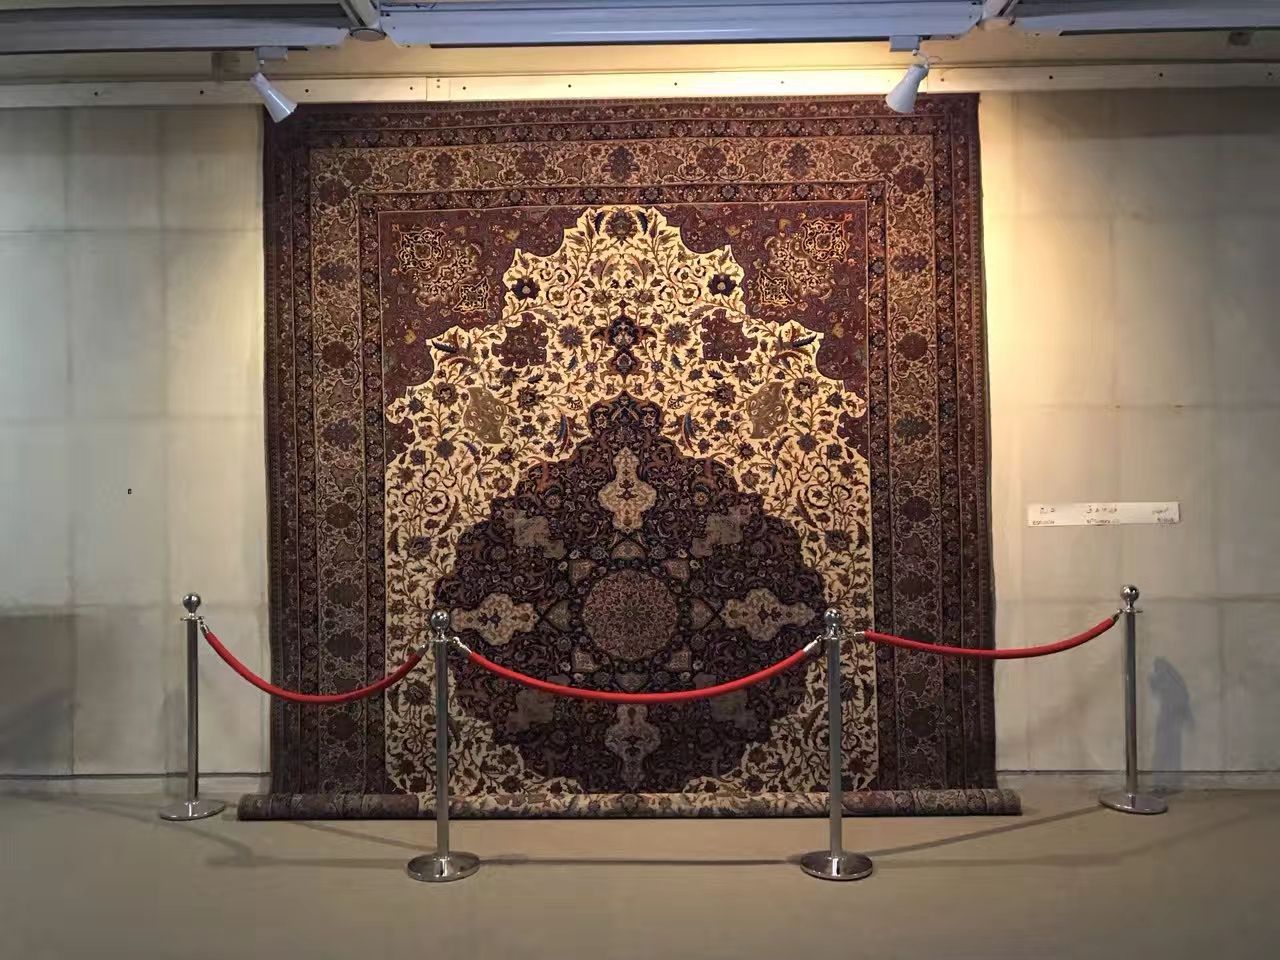 这是伊朗乡镇的地毯产品，采用典型的波斯靛蓝和红色-外国地毯织品纹样-图片